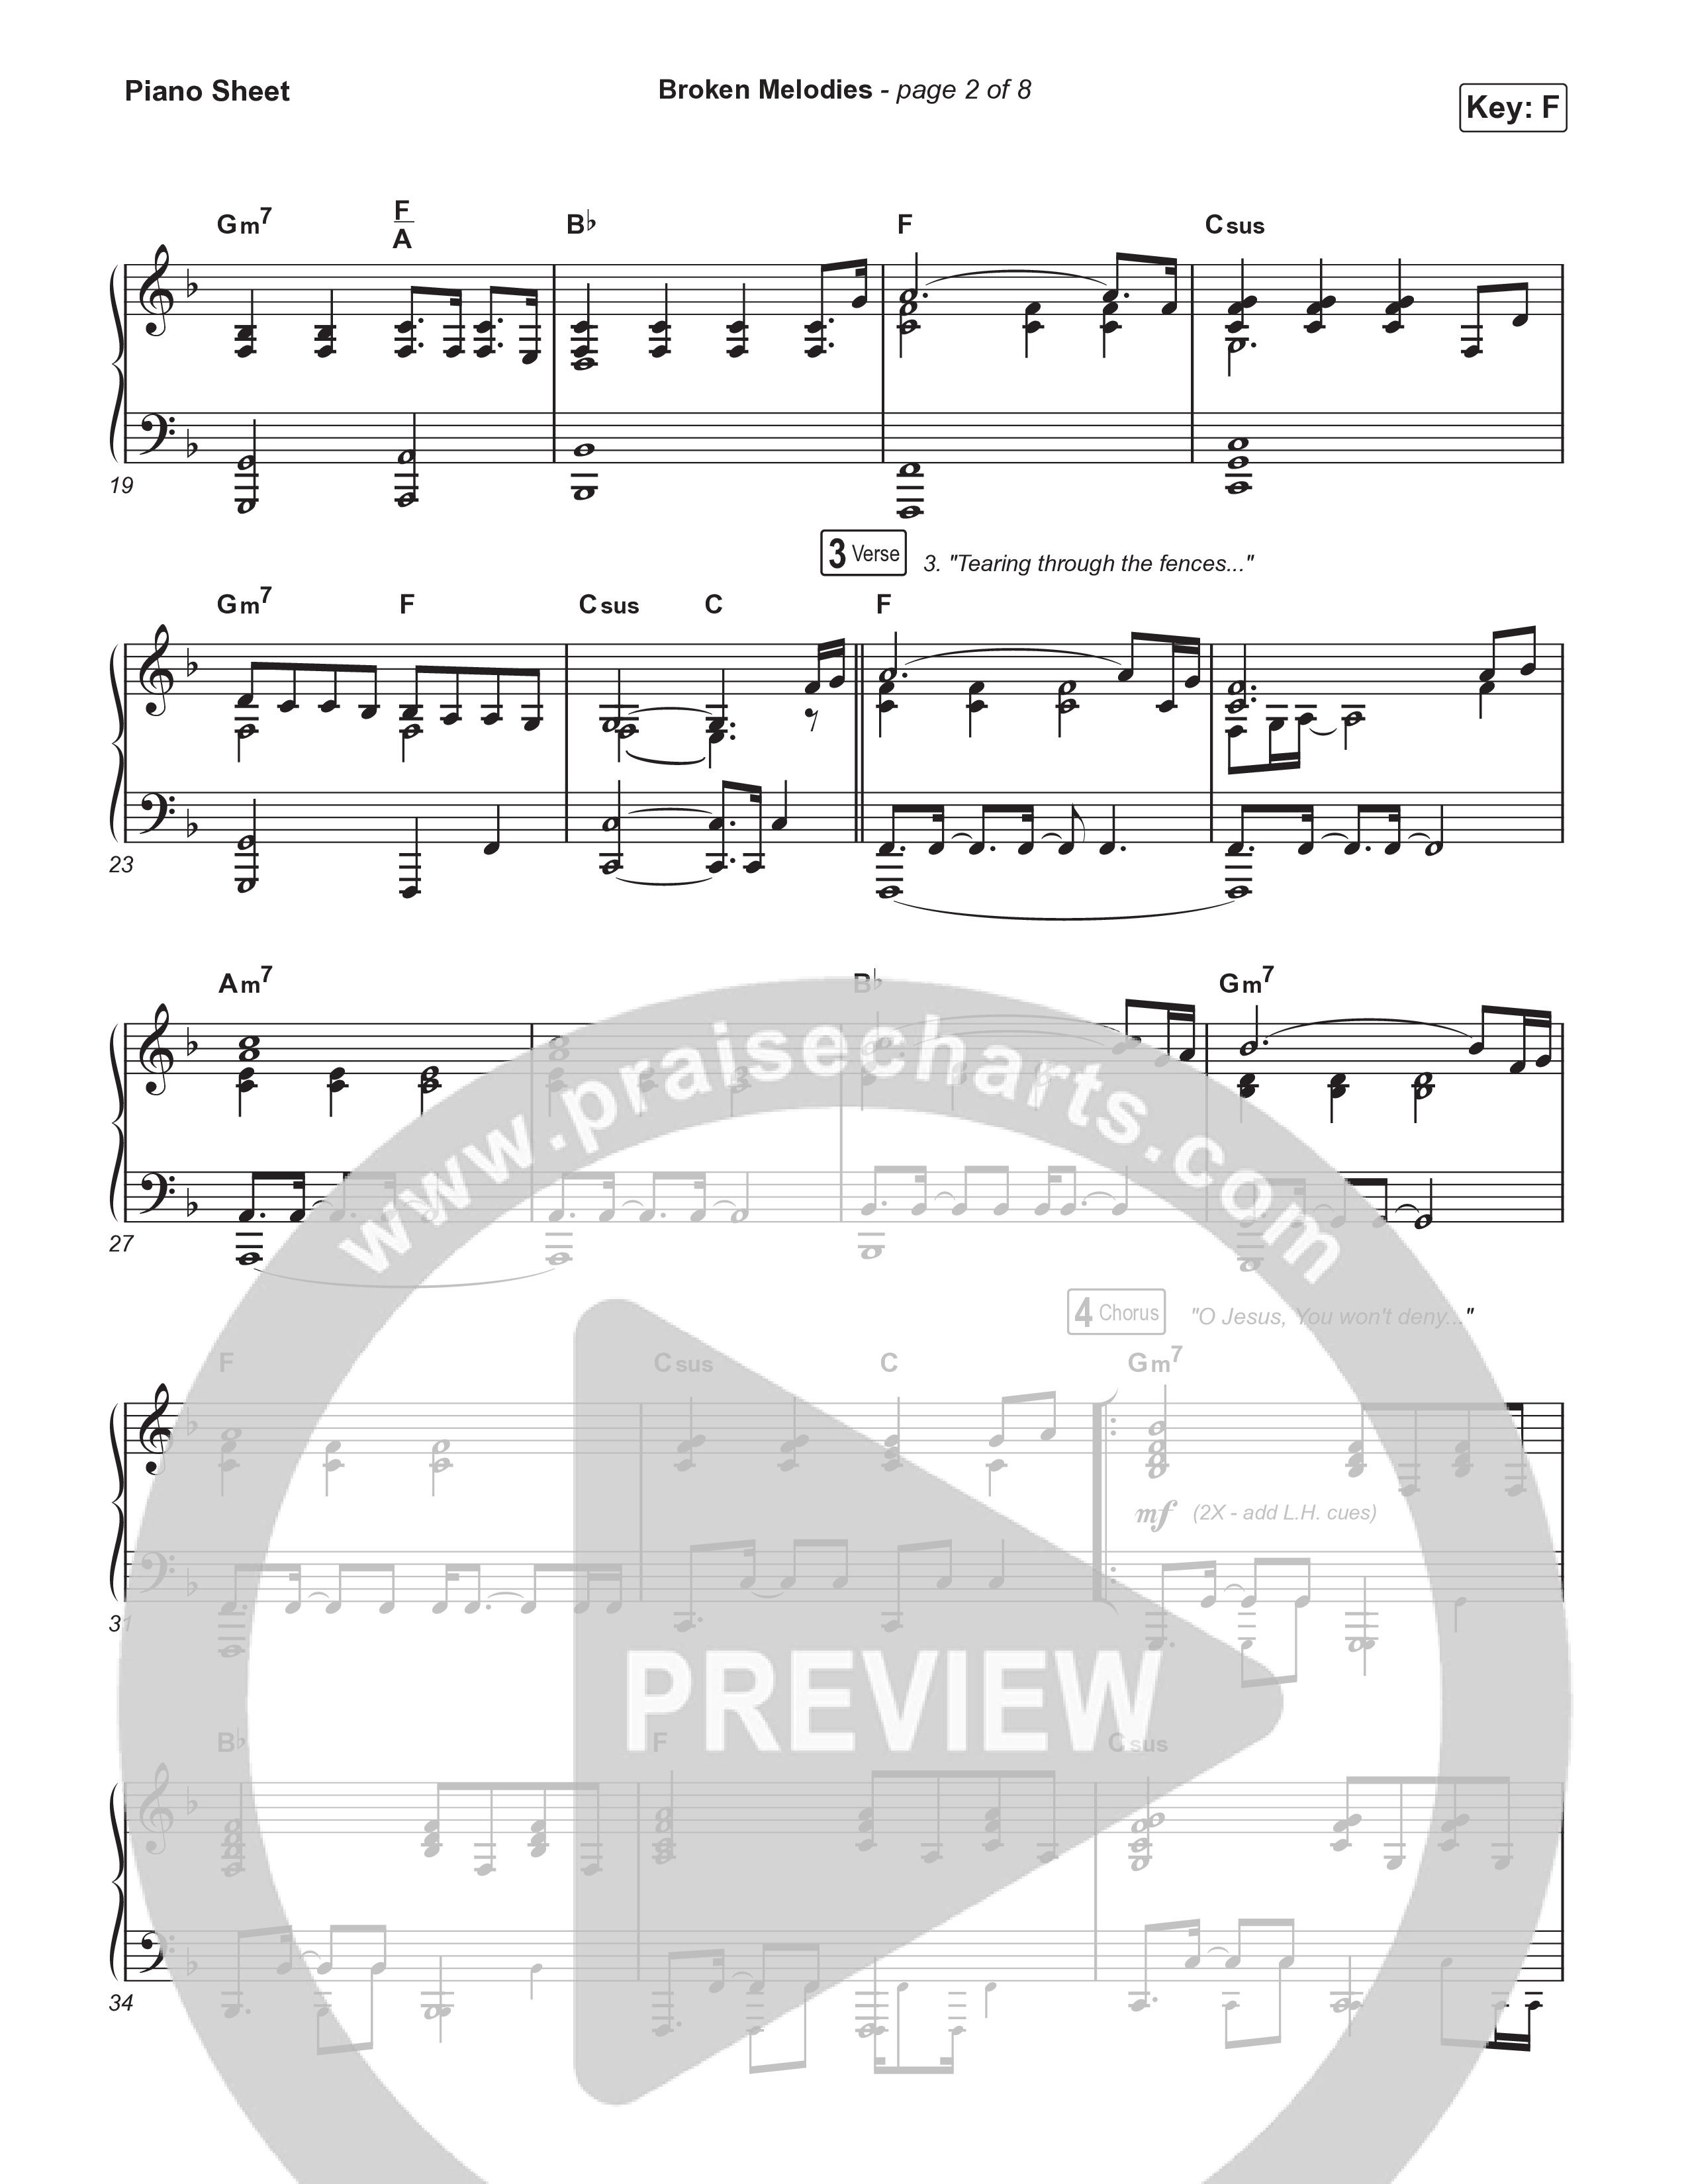 Broken Melodies Piano Sheet (Maverick City Music / Roosevelt Stewart)